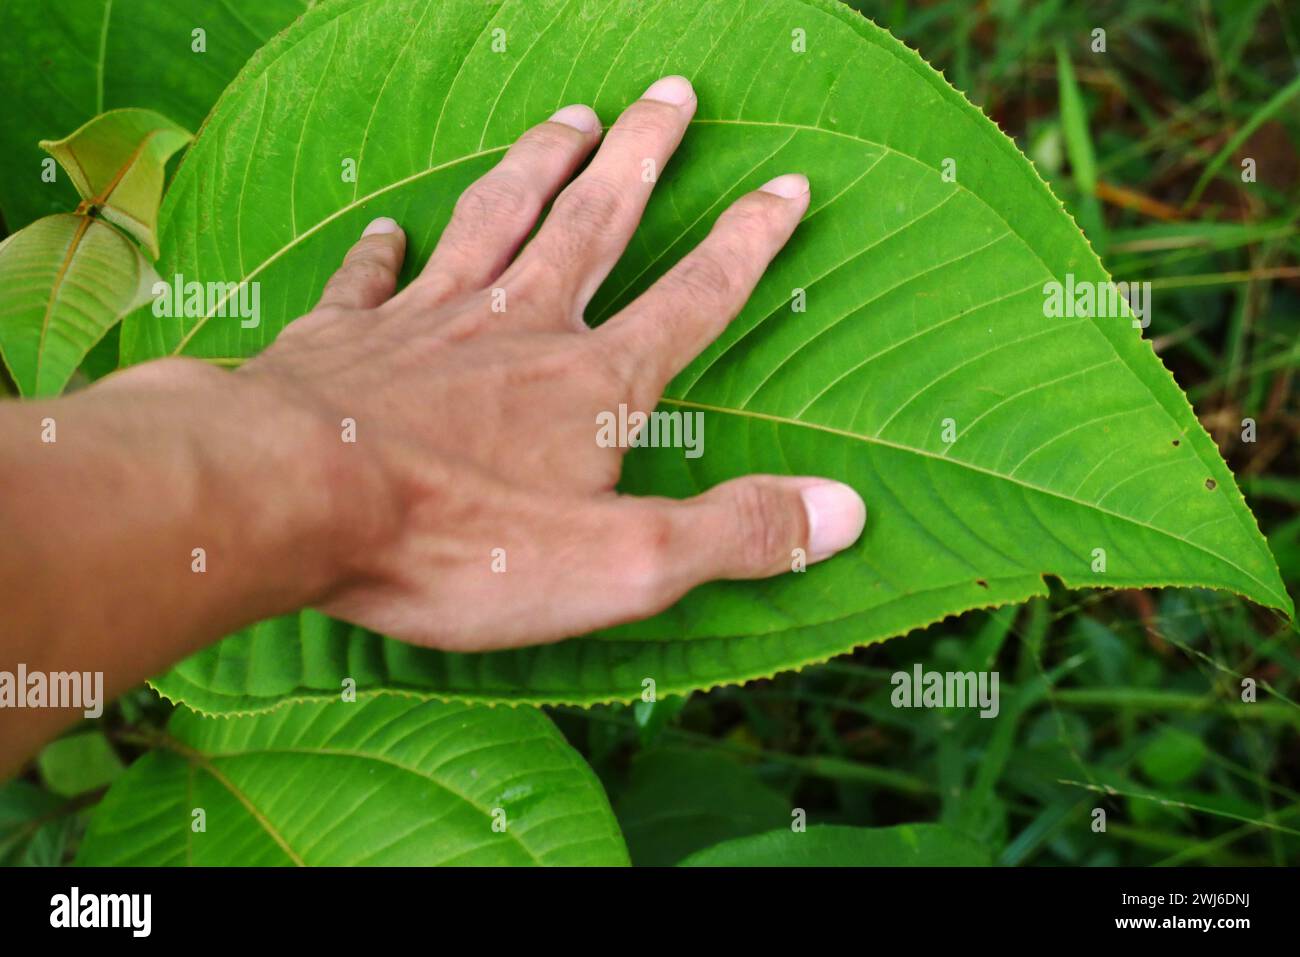 Die Hand des Mannes berührt feuchte wilde tropische Blätter nach Regen. Der Begriff des Verhältnisses zwischen Natur und Mensch. Männlicher Arm berührt nassen tropischen lea Stockfoto